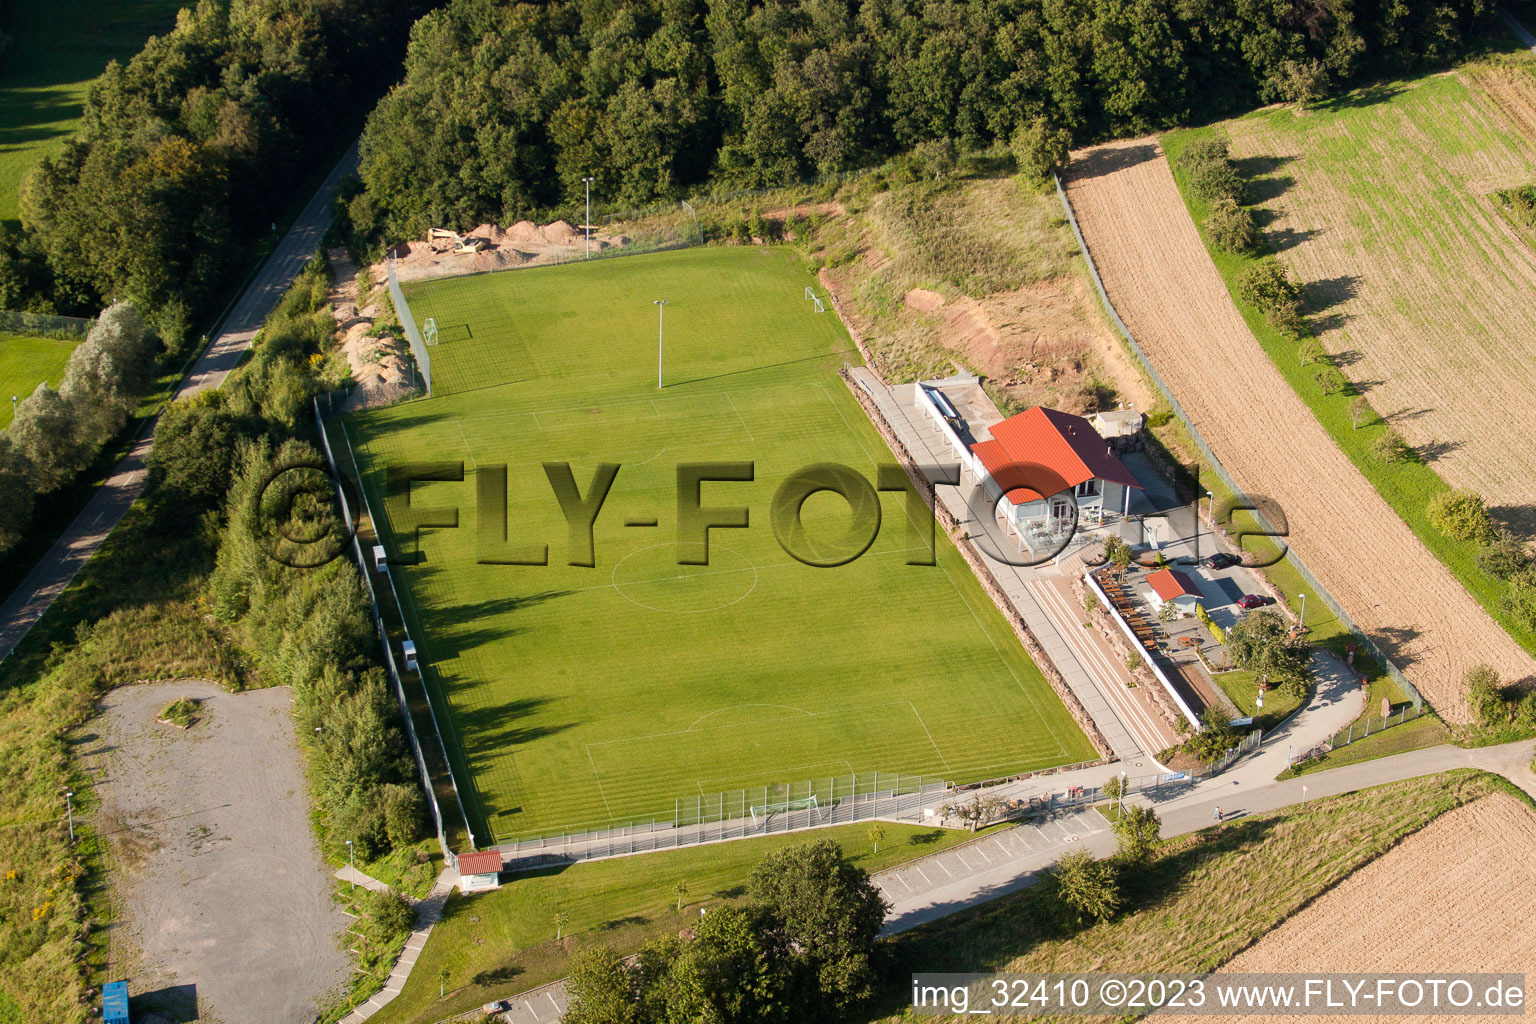 Auerbach, Pneuhage Stadion in Karlsbad im Bundesland Baden-Württemberg, Deutschland aus der Luft betrachtet